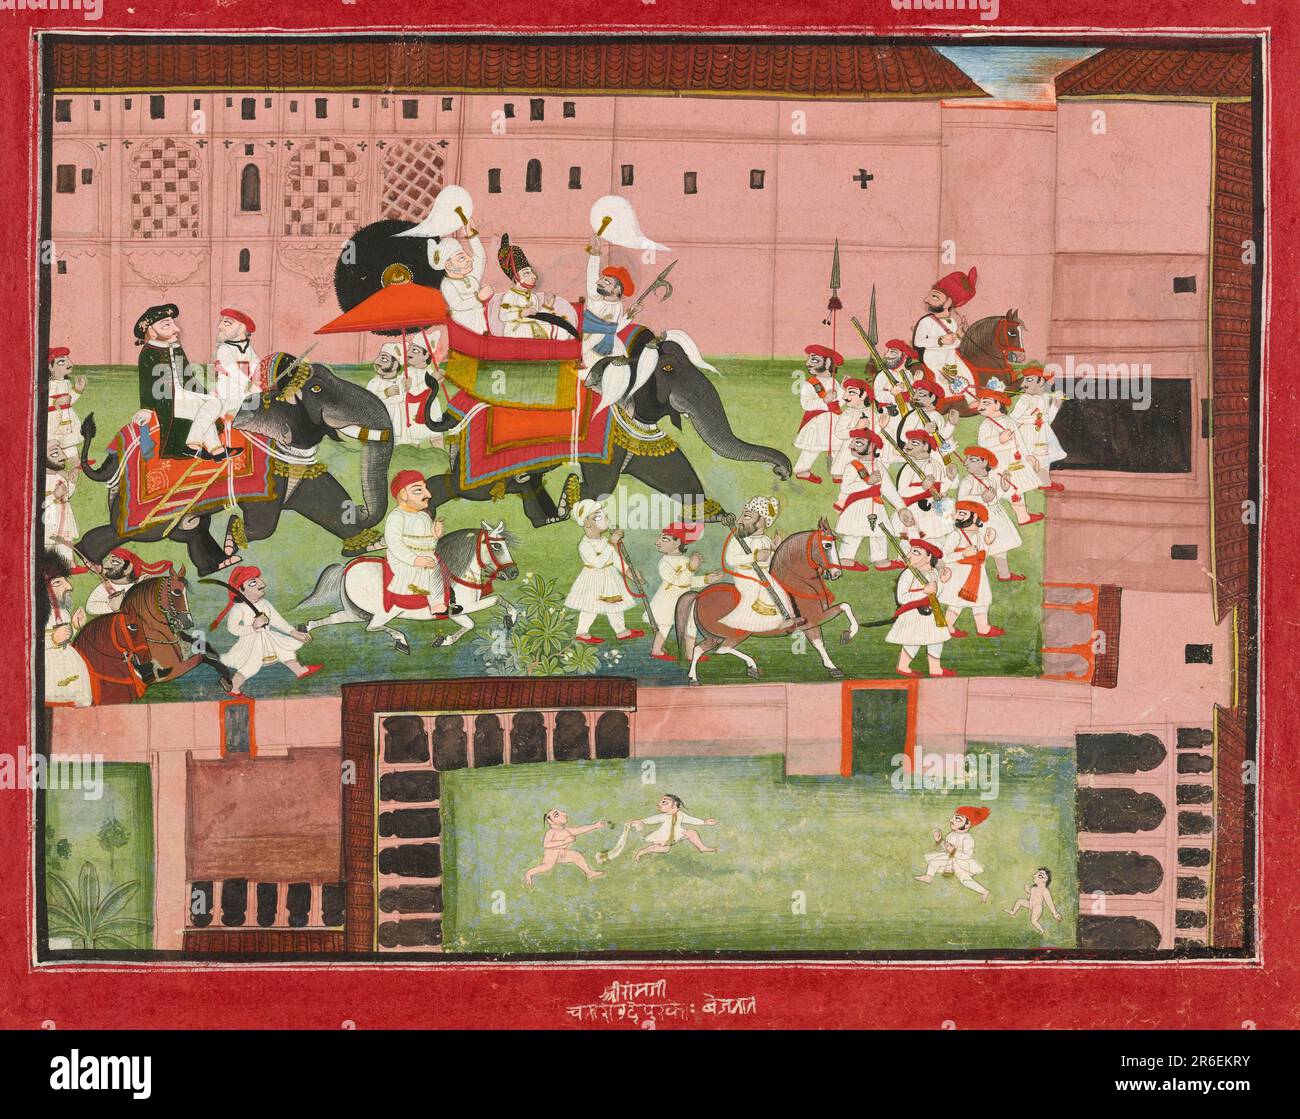 Maharaja Balwant Singh di Ratlam in processione con il colonnello Borthwick. Acquerello opaco e oro su carta. Origine: Devgarh o Ratlam, stato di Madhya Pradesh, India. Data: 1825. Museo: Freer Gallery of Art e Arthur M. Sackler Gallery. Foto Stock